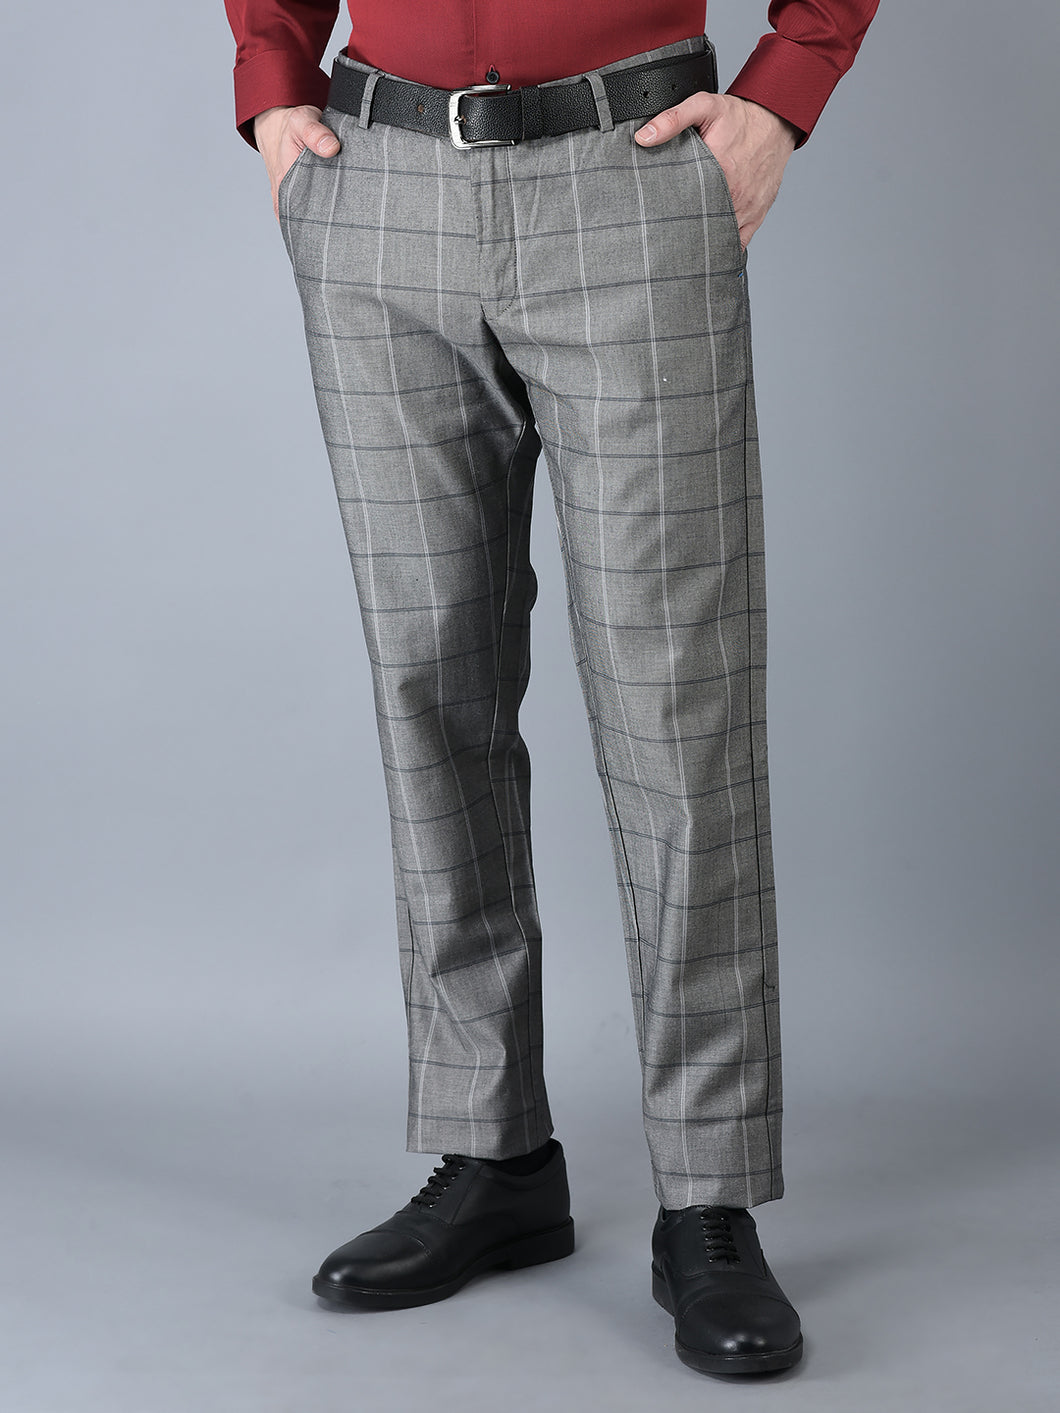 CANOE MEN Formal Trouser  GREY Color